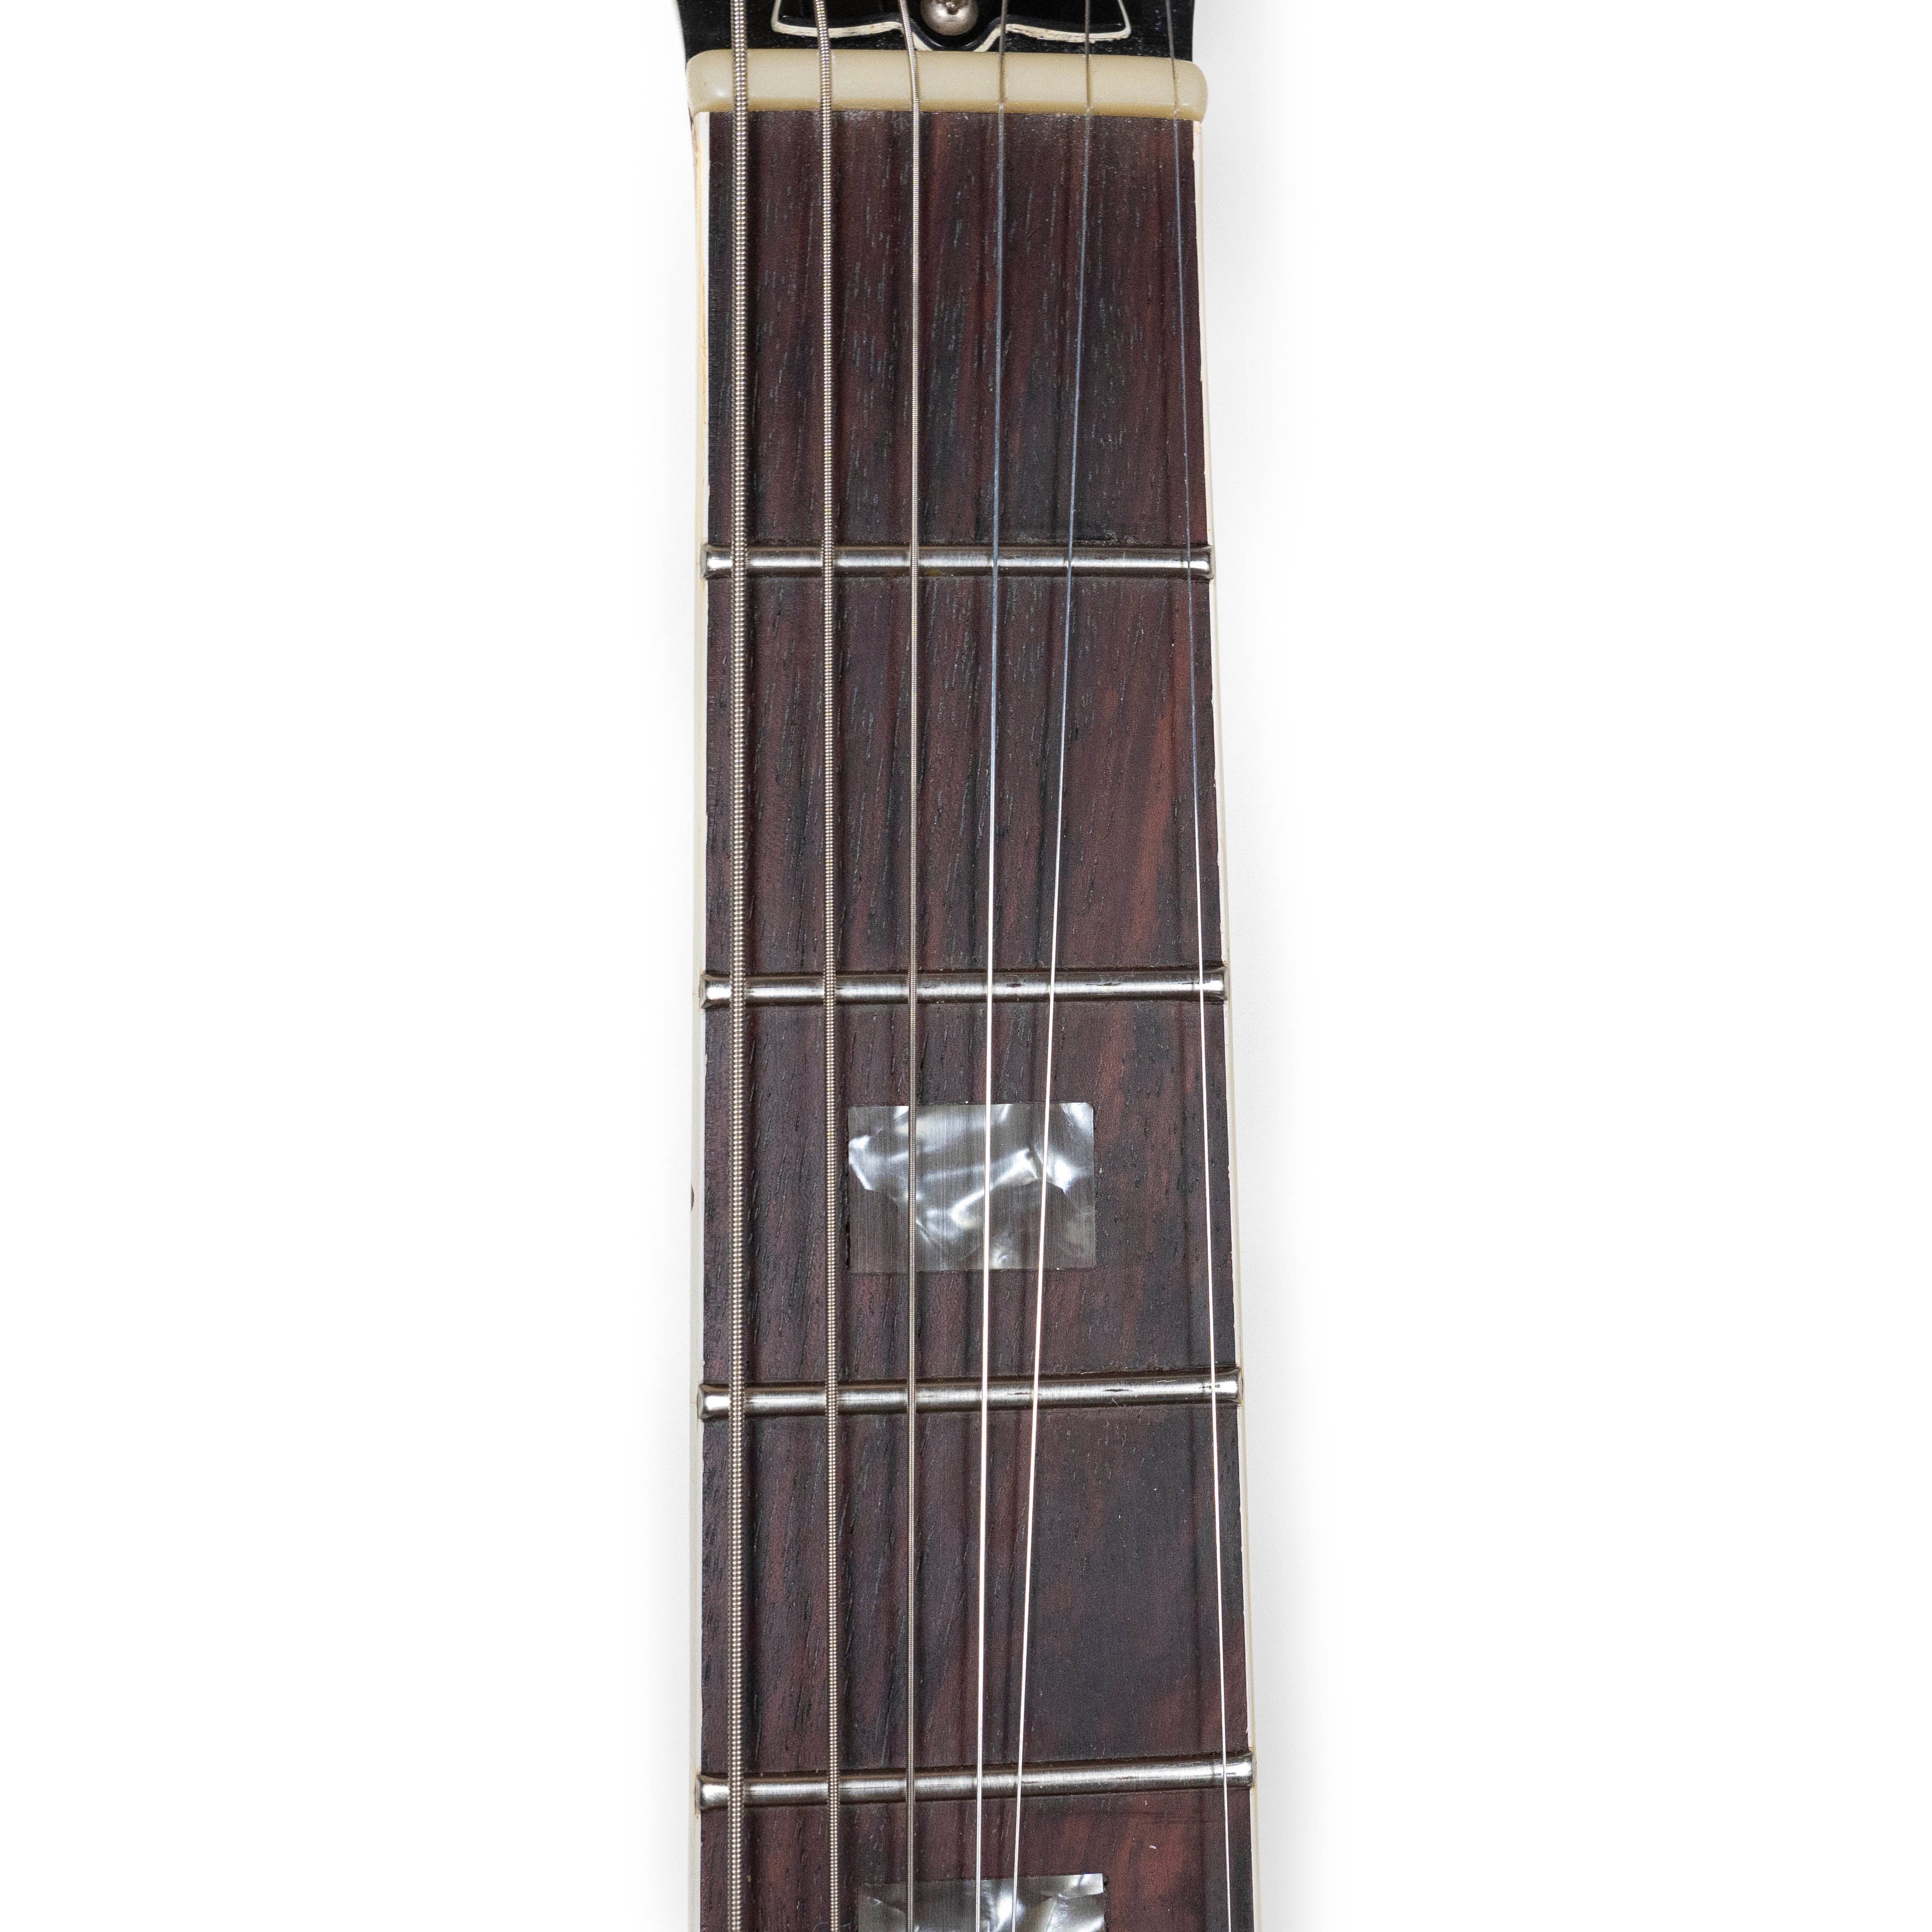 Gibson 1973 ES-335, Cherry